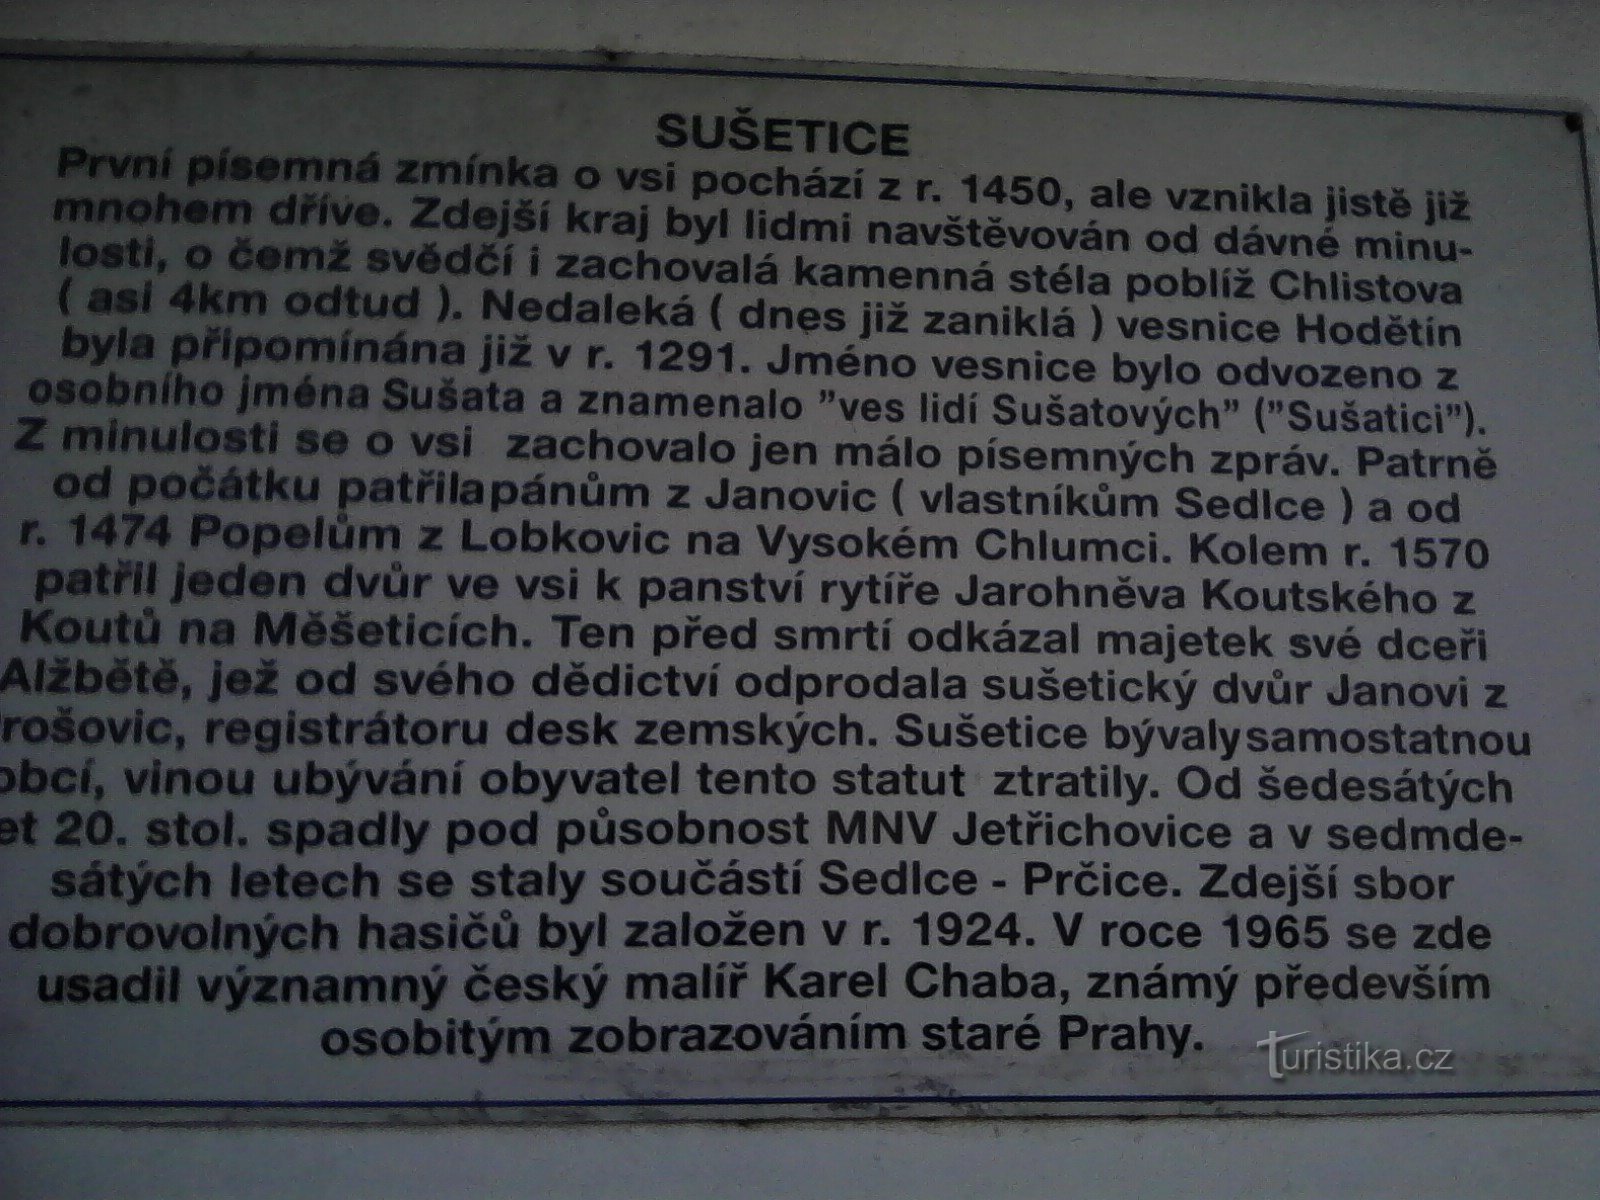 2. Povijest Sušetica.